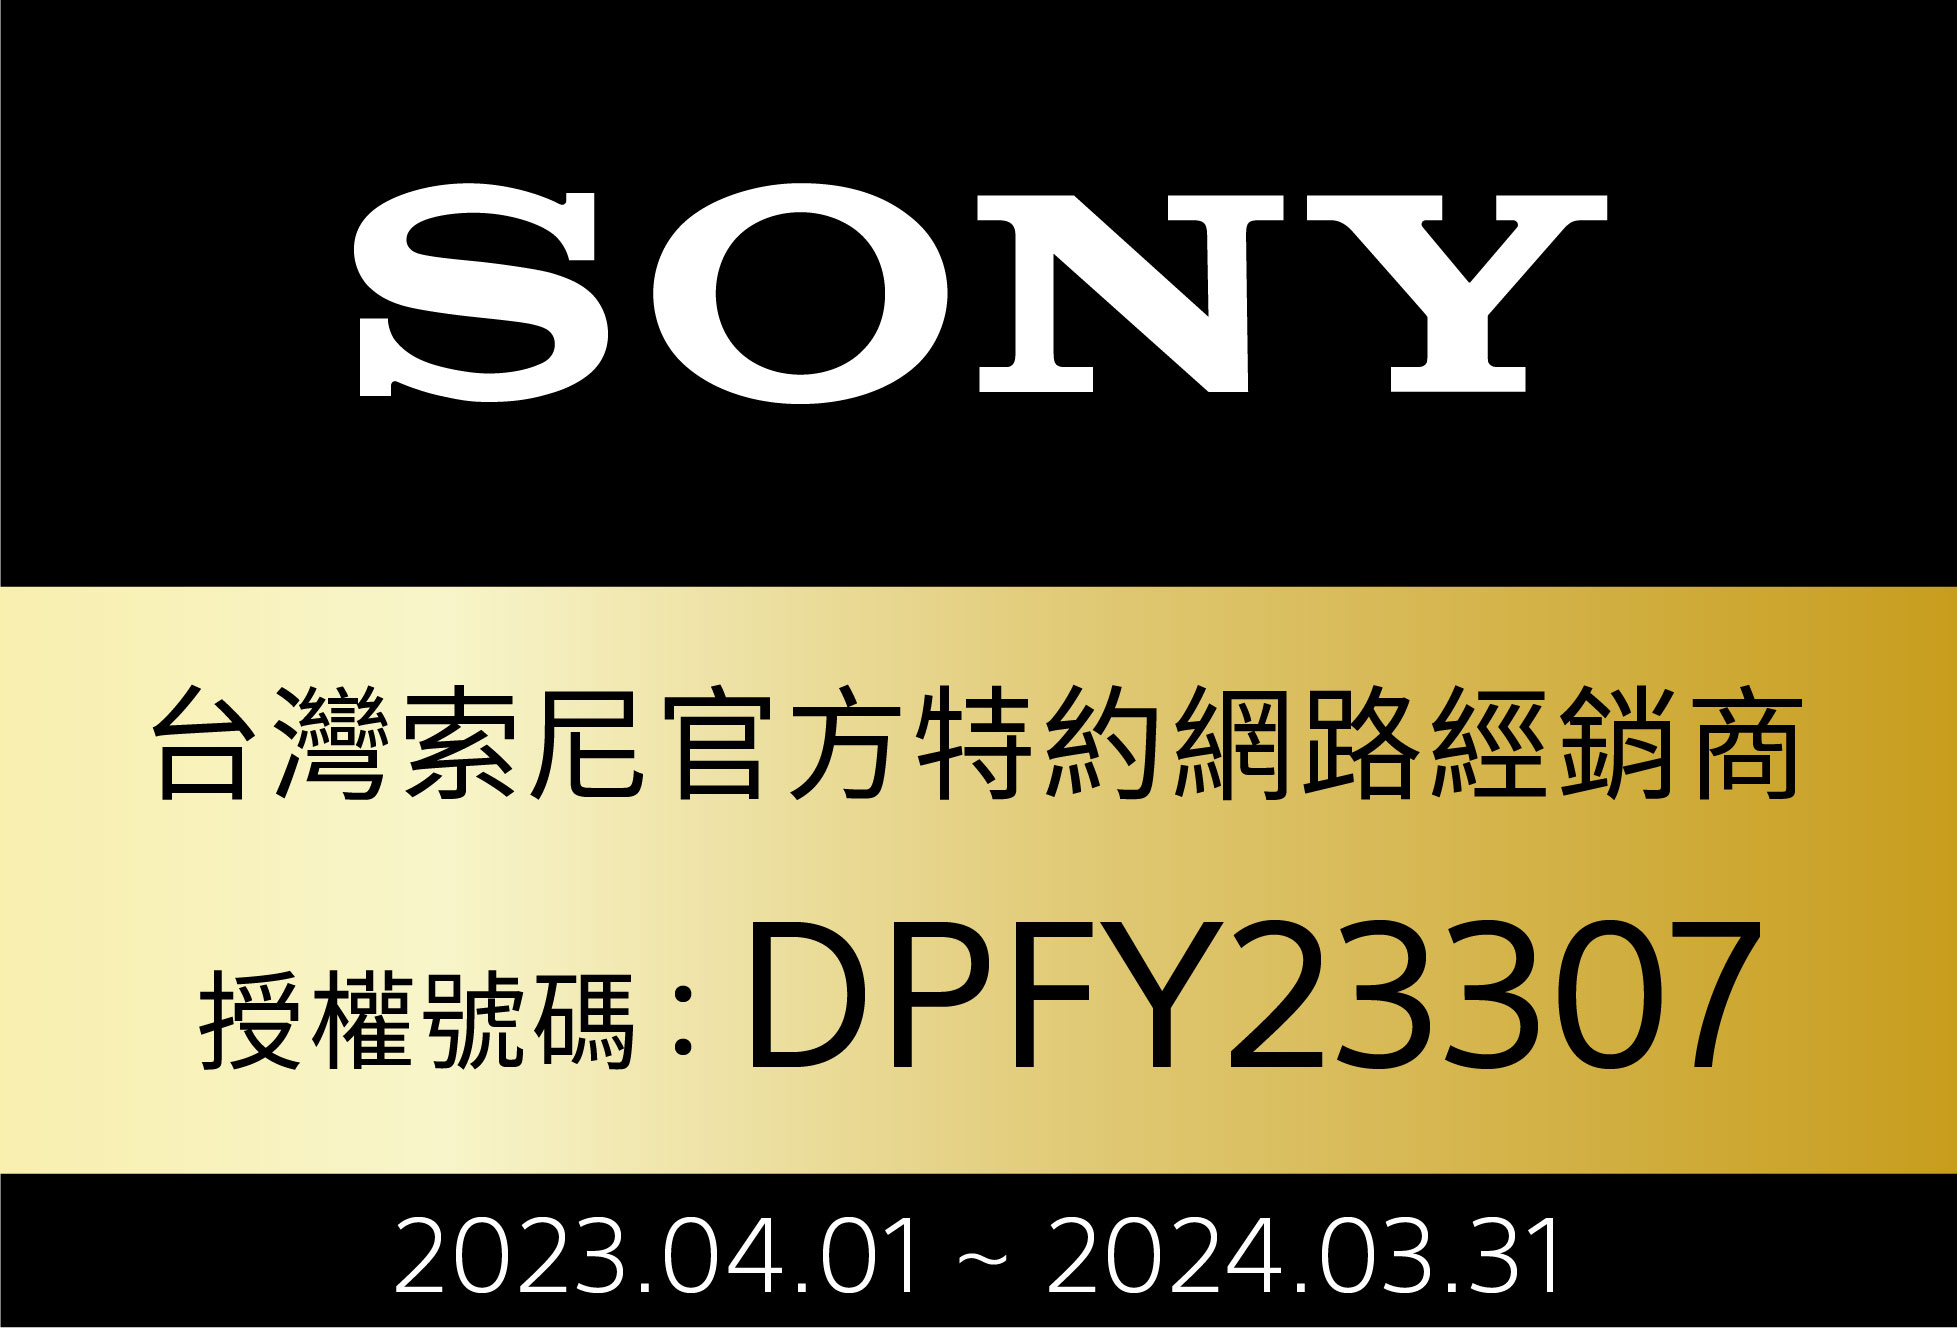 SONY台灣索尼官方特約網路經銷商DPFY233072023.04.01  2024.03.31